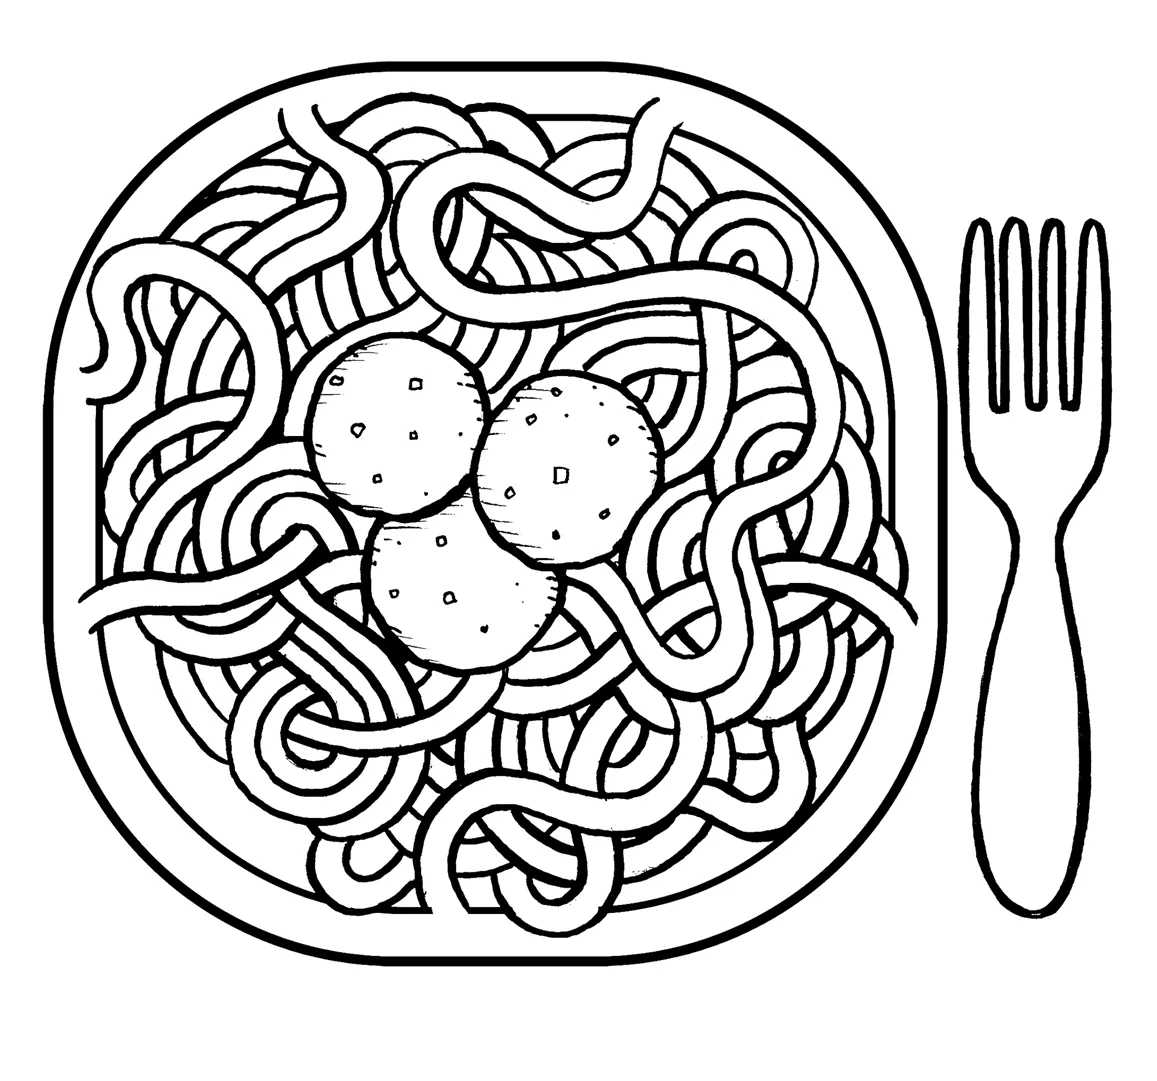 Spaghetti para colorear - Imagui